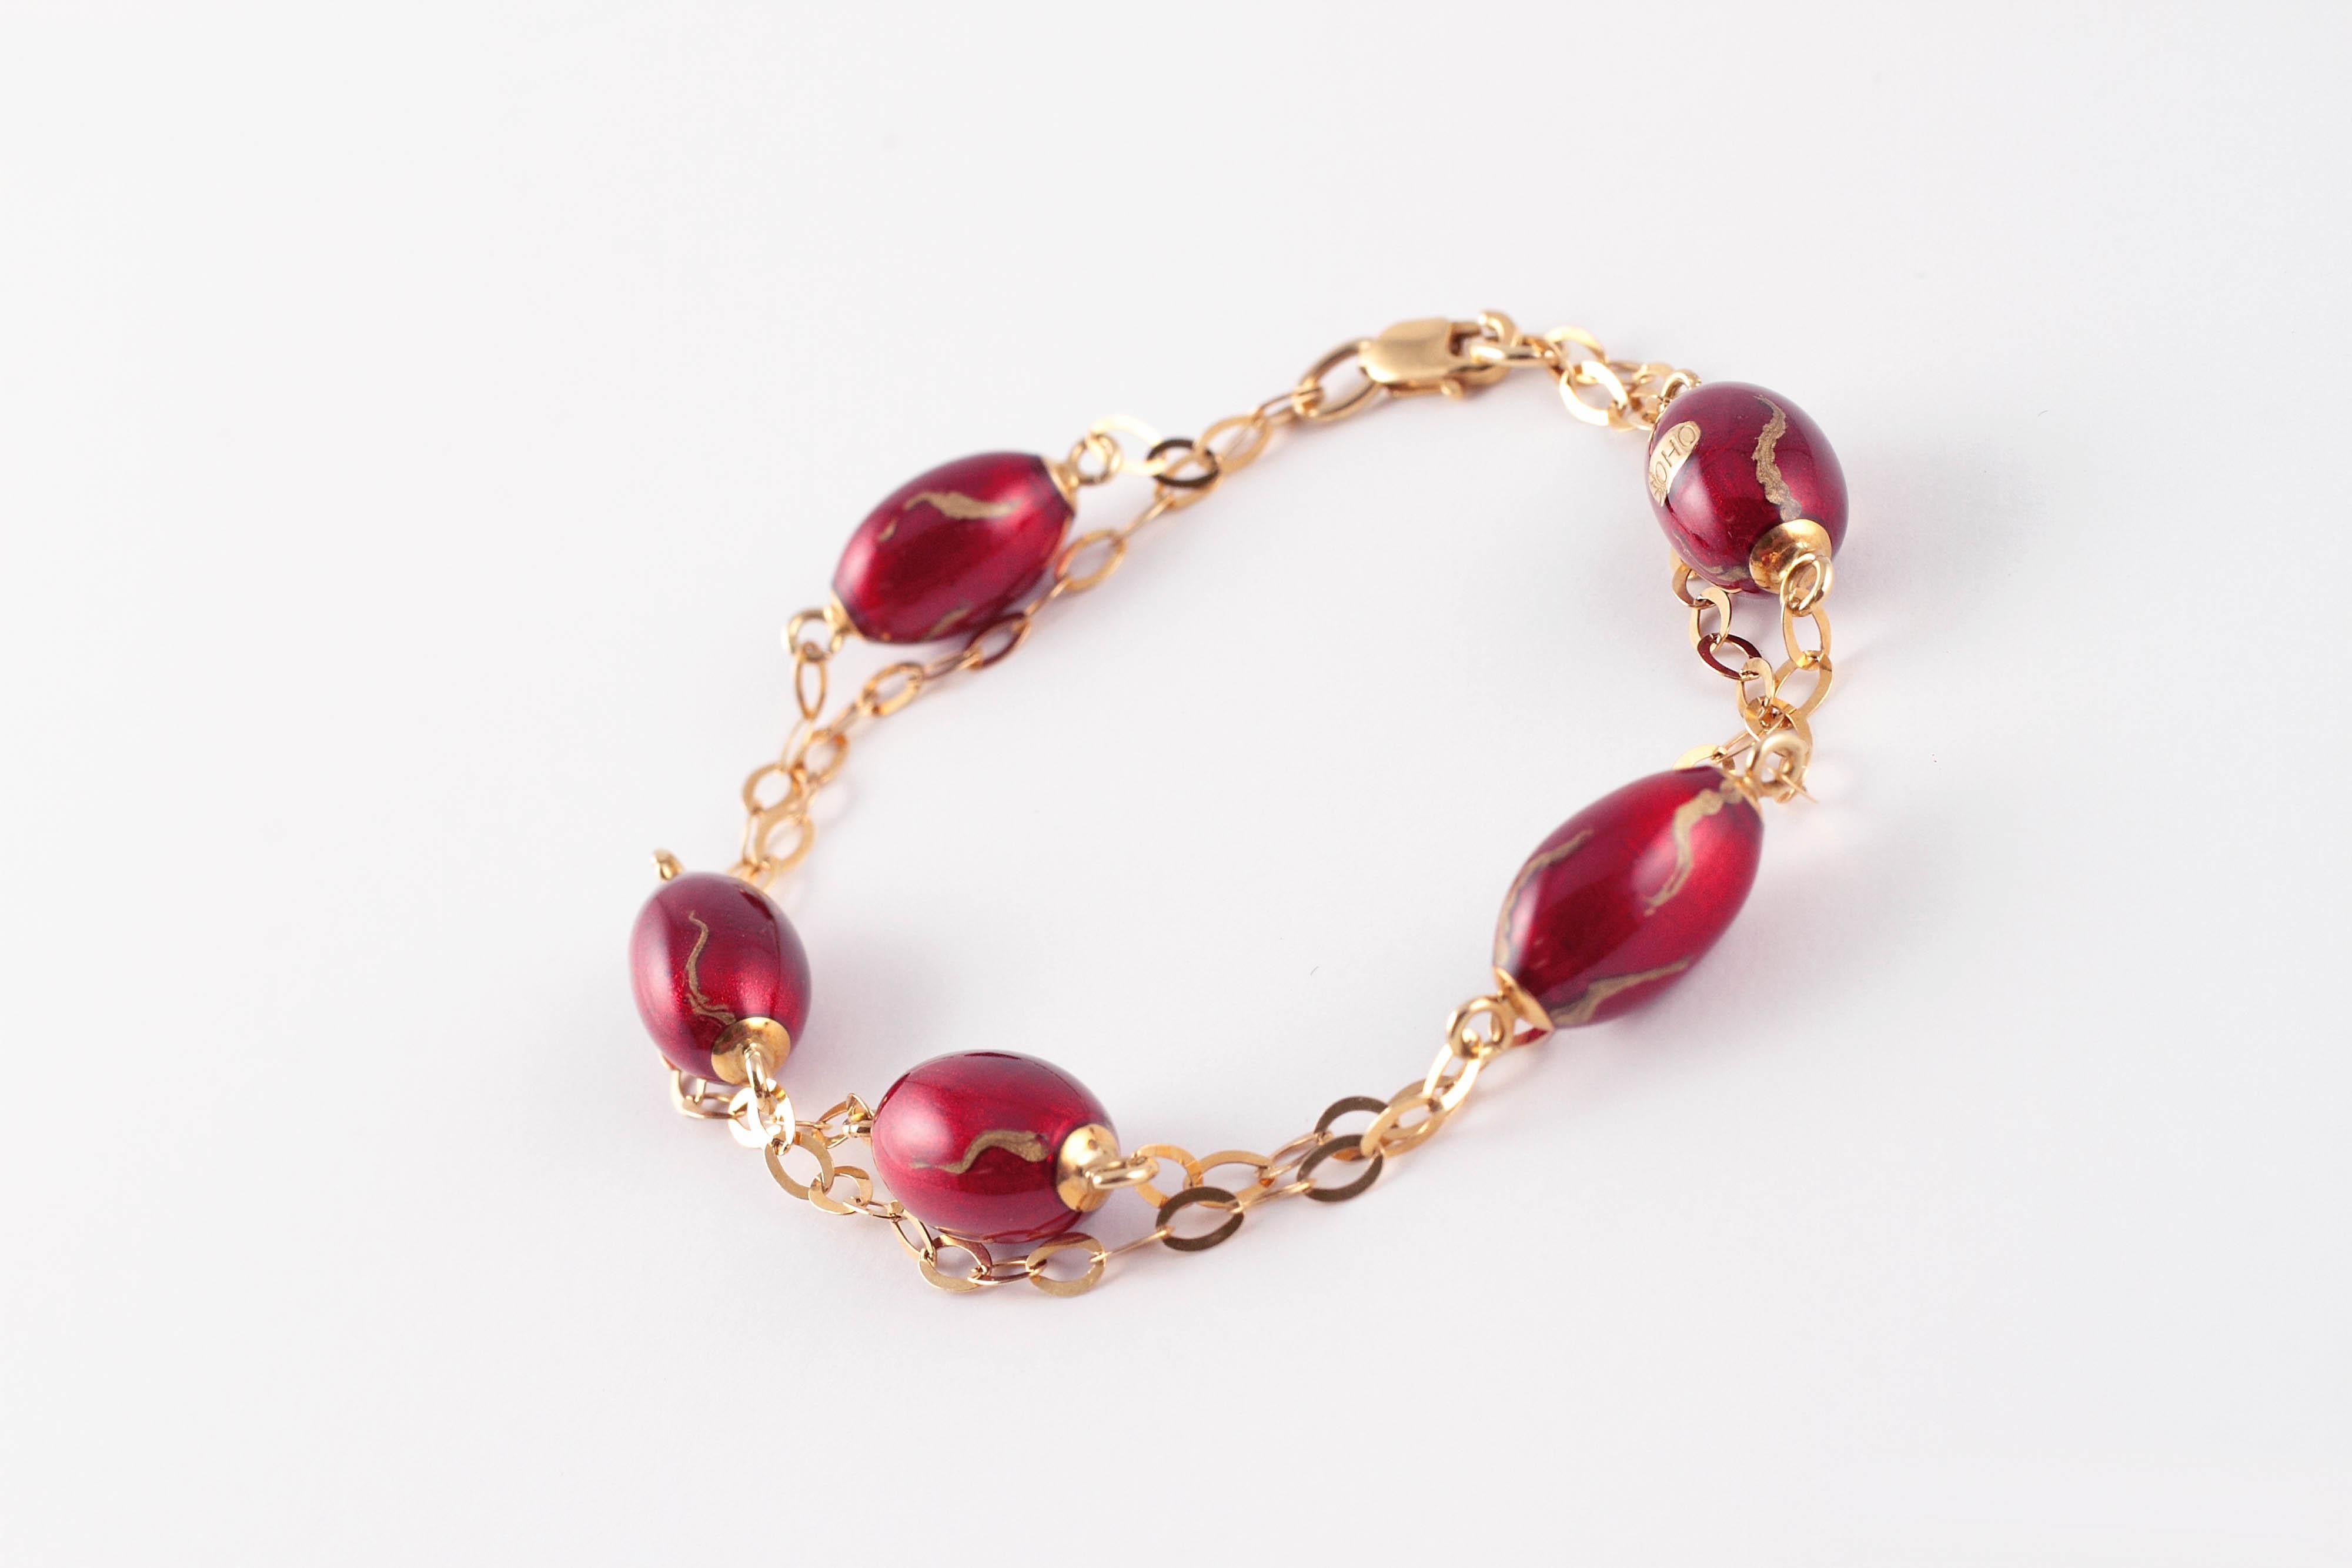 Wirklich ungewöhnlich!  Dieses interessante Armband besteht aus zwei Reihen ineinandergreifender flacher Glieder, die sich mit roten und emaillierten Perlen abwechseln und mit einem Karabinerverschluss aus 18 Karat Gelbgold gesichert sind. .